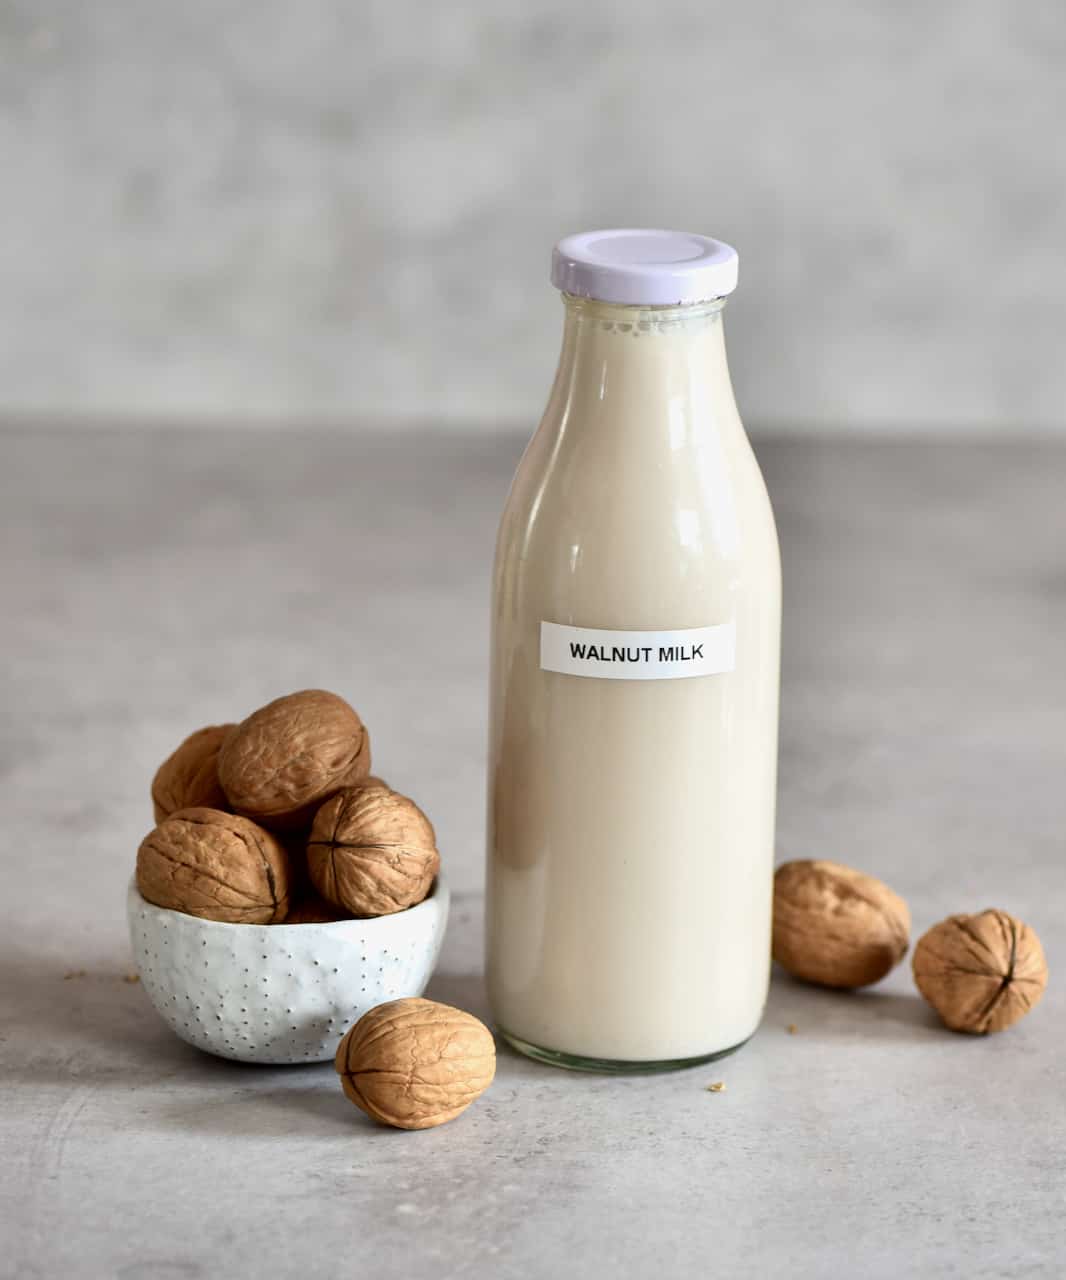 Walnut milk in a bottle and walnuts